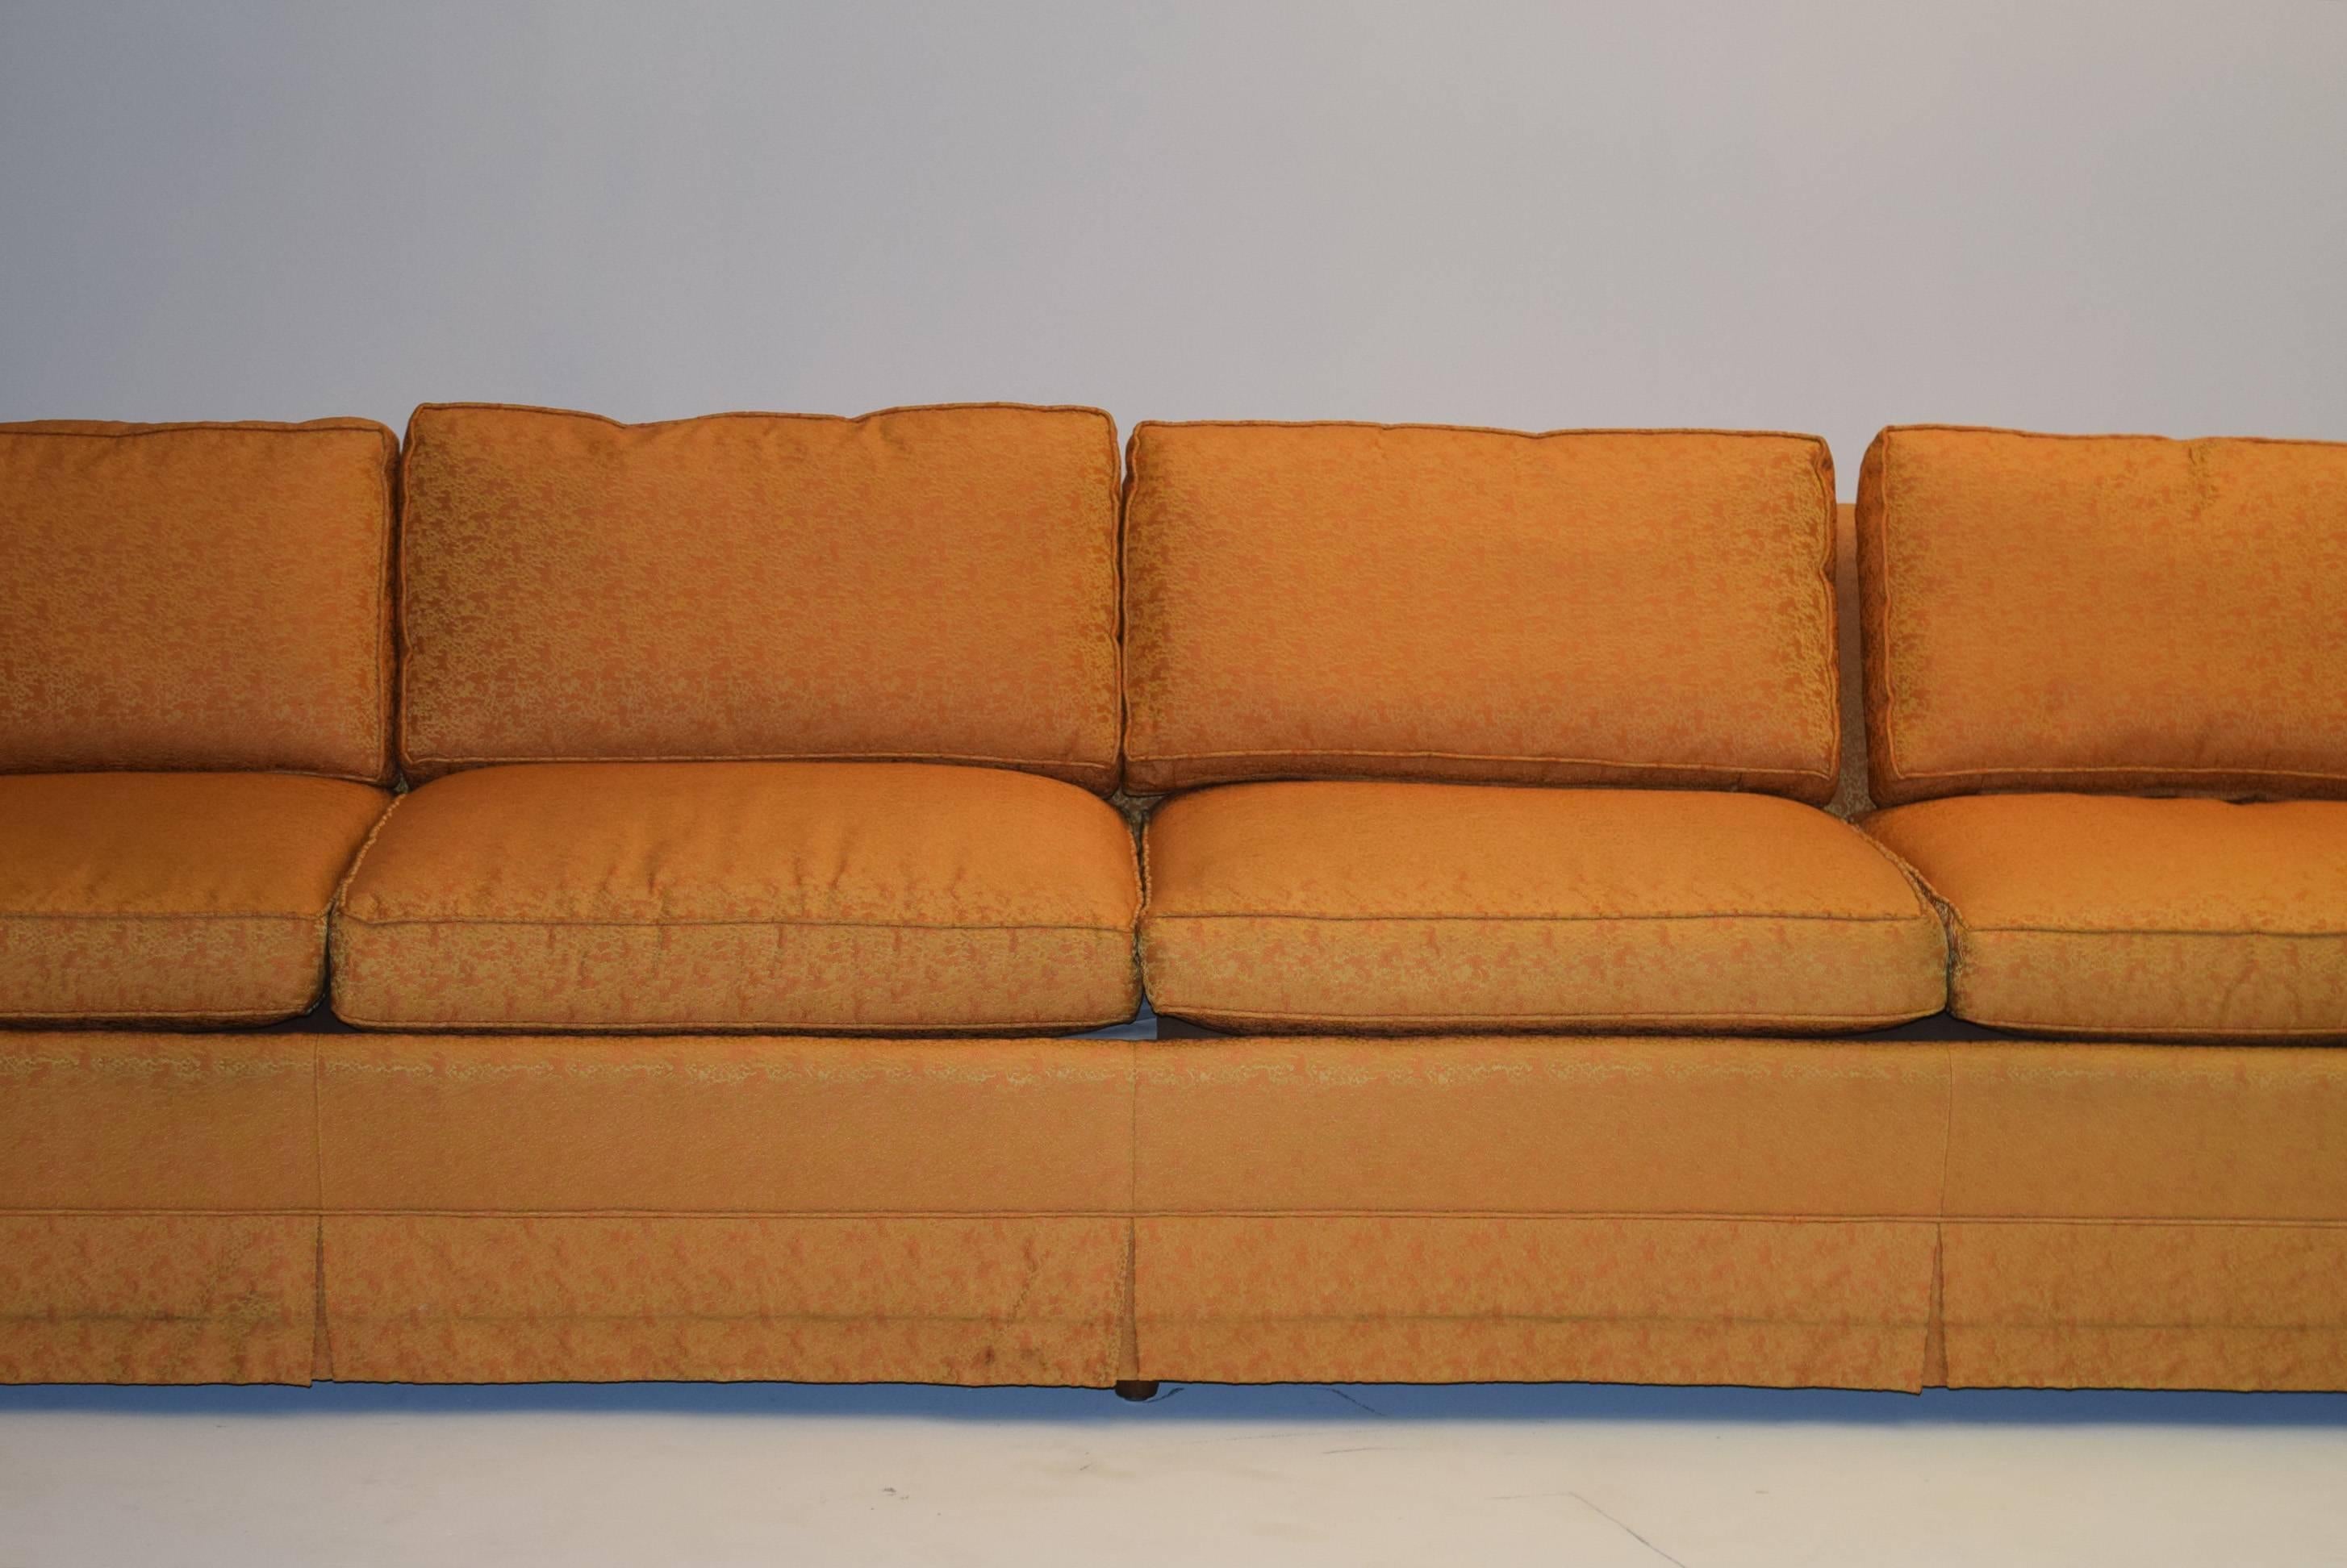 9 foot sofa